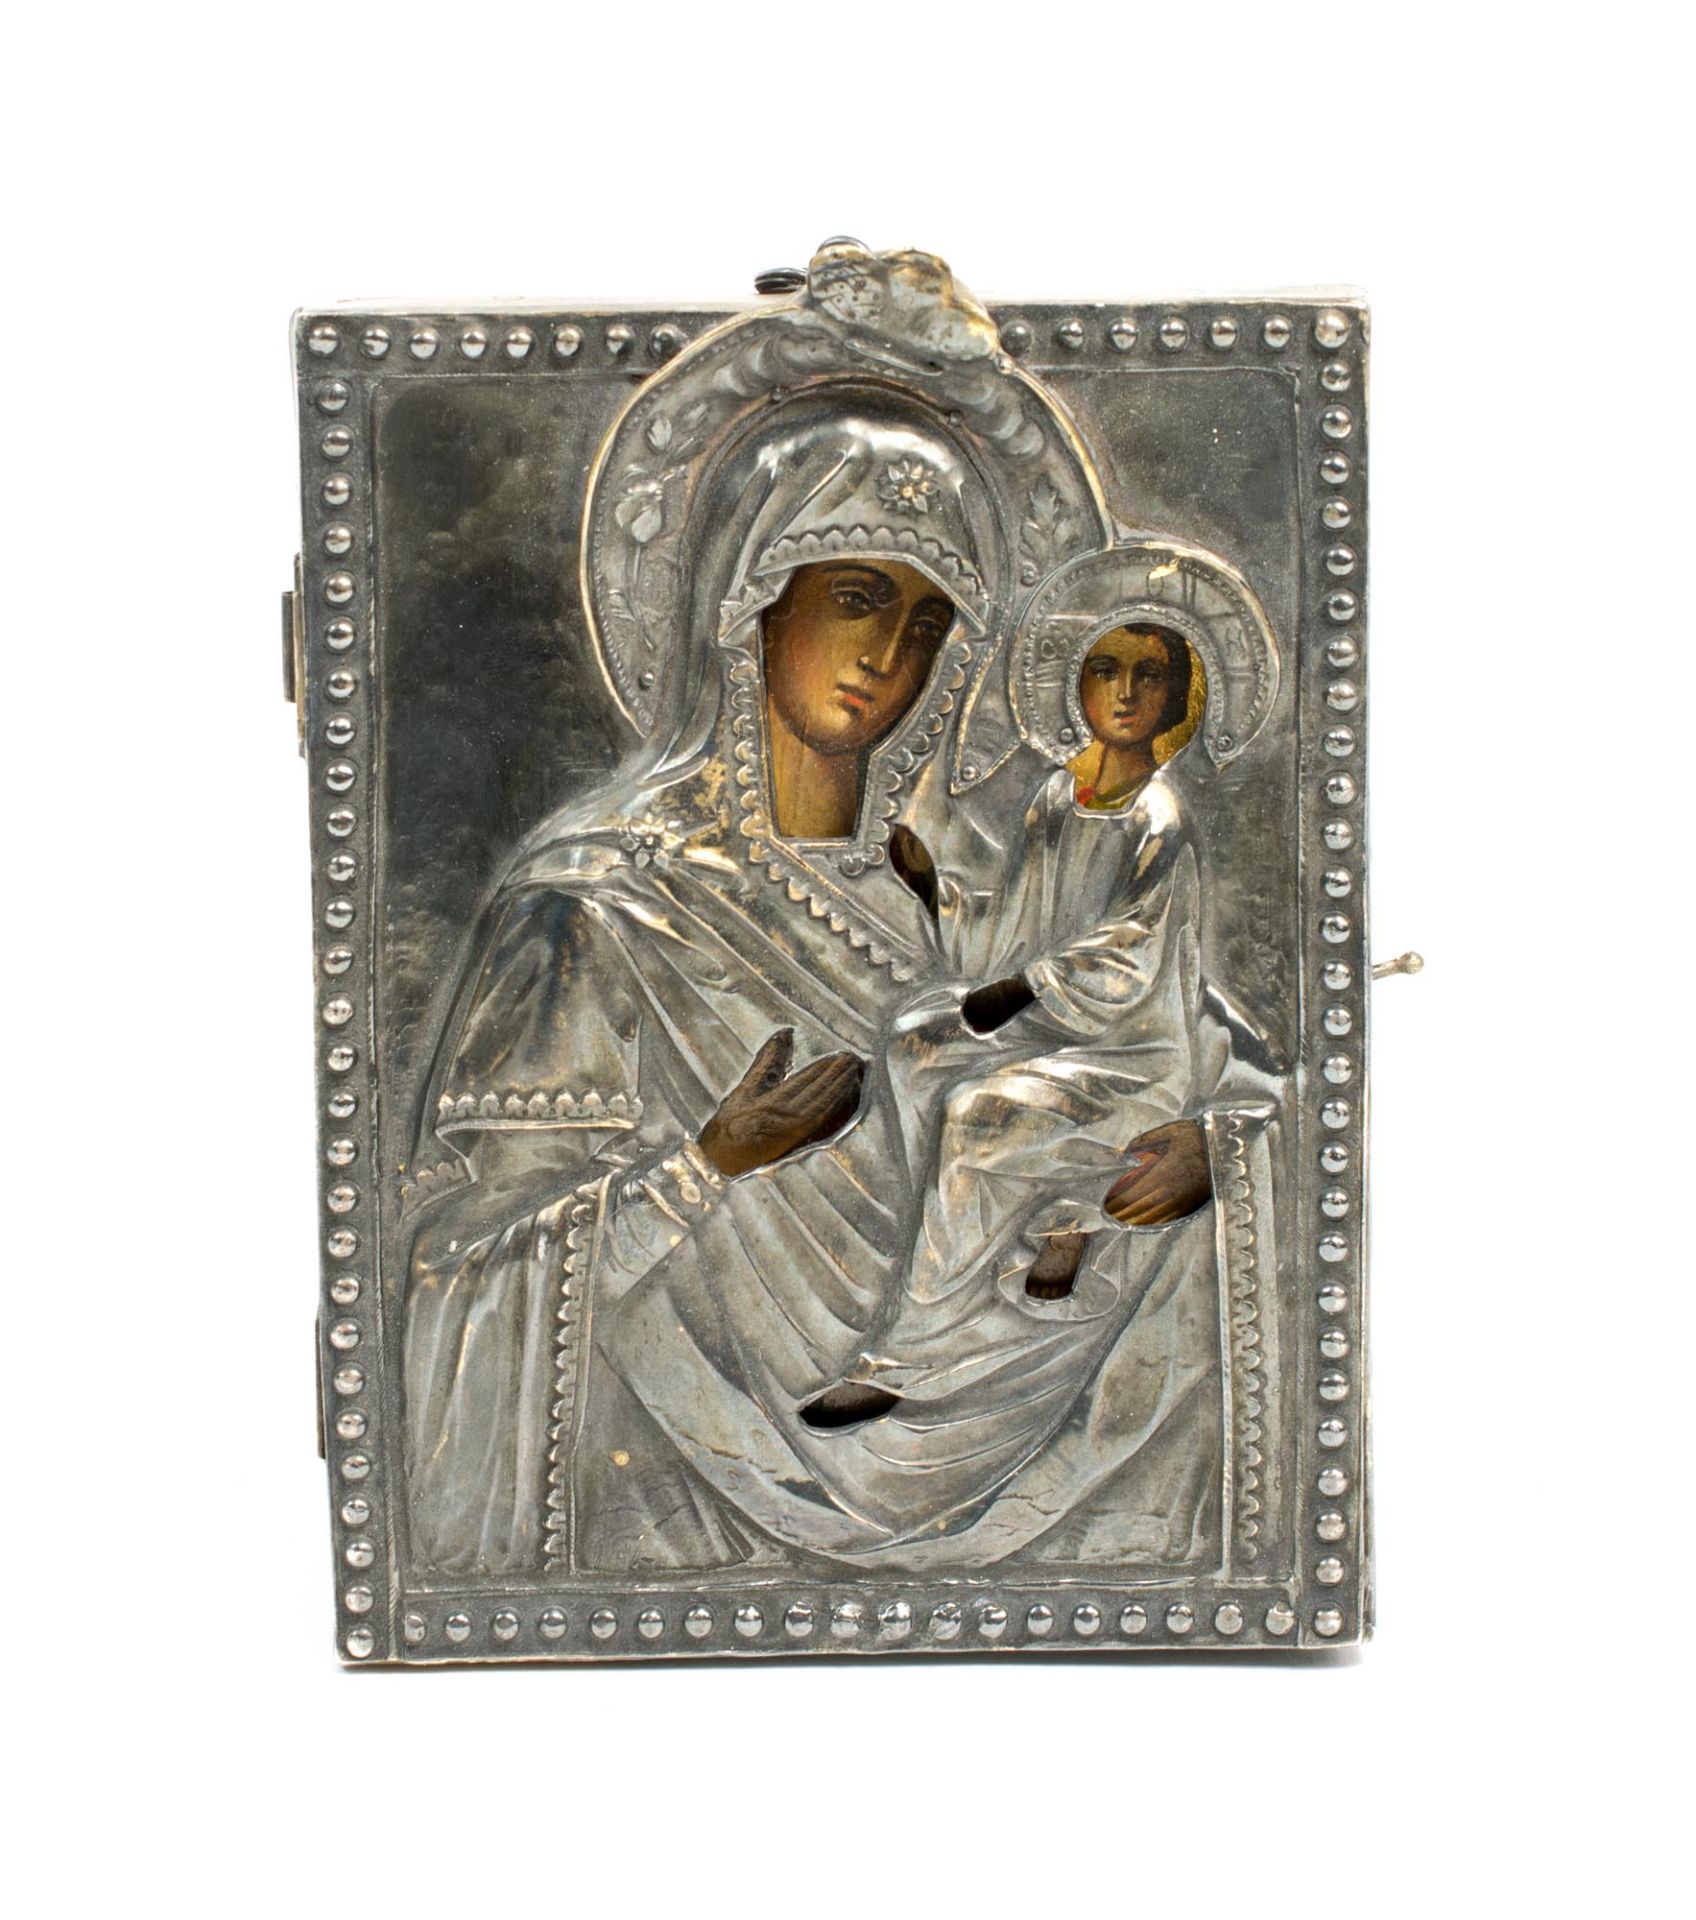 Silberoklad-Ikone mit der Gottesmutter von Smolensk